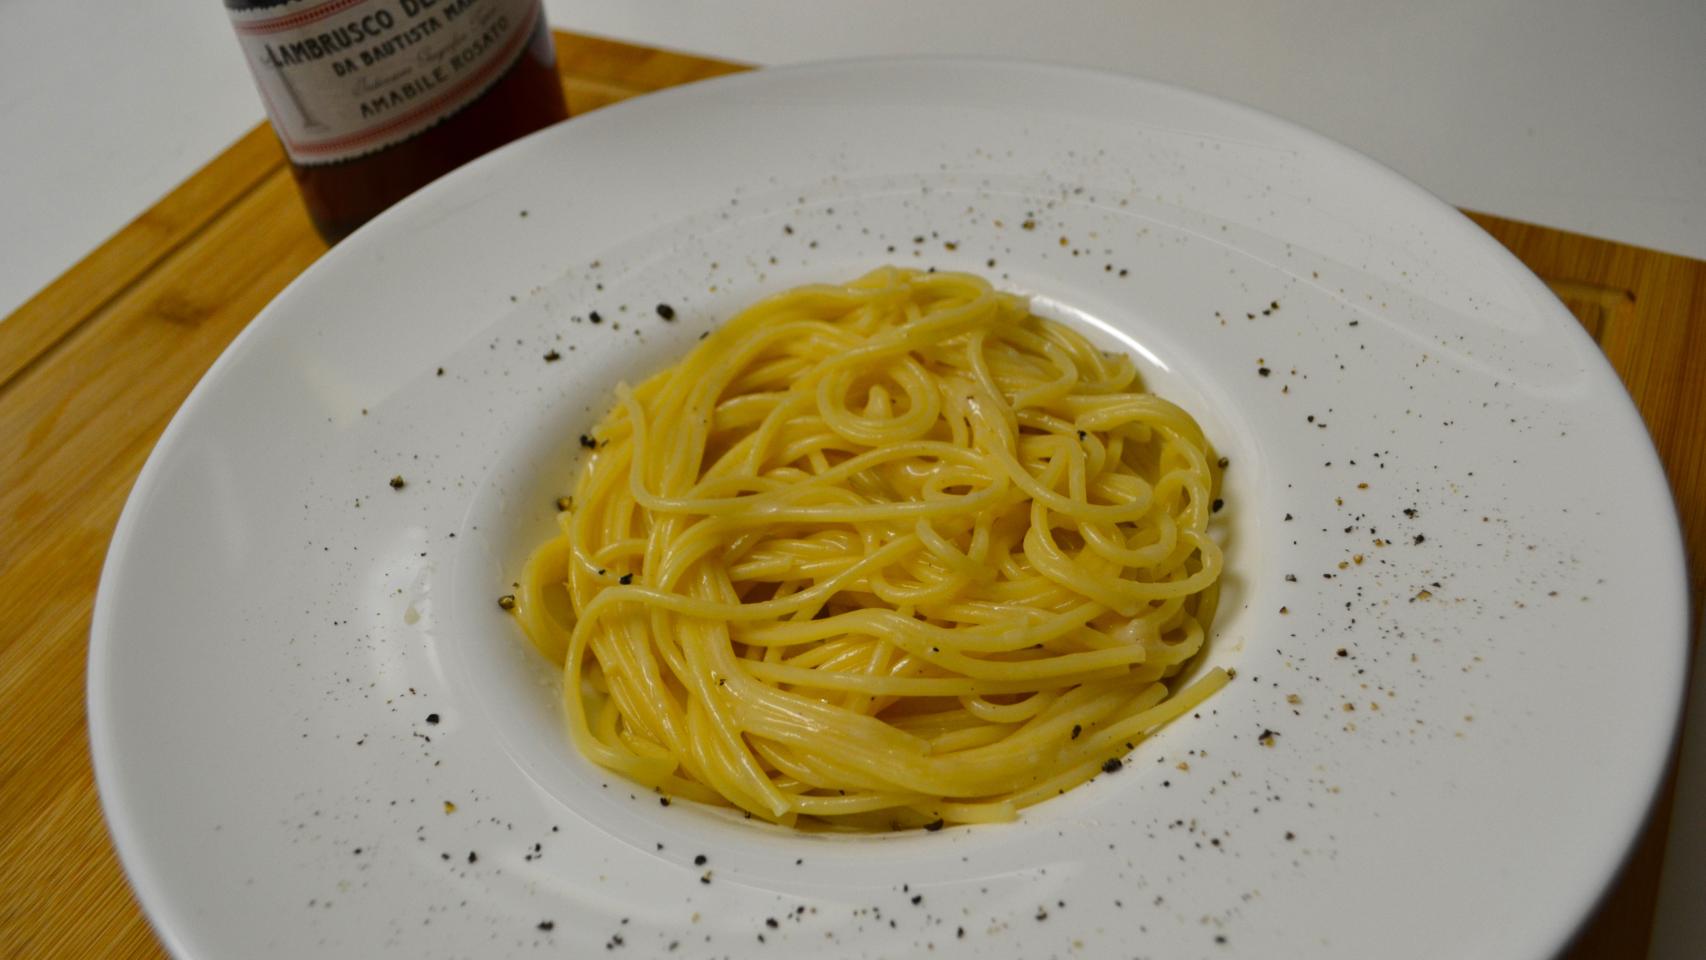 Espaguetis con queso y pimienta (Spaghetti cacio e pepe)